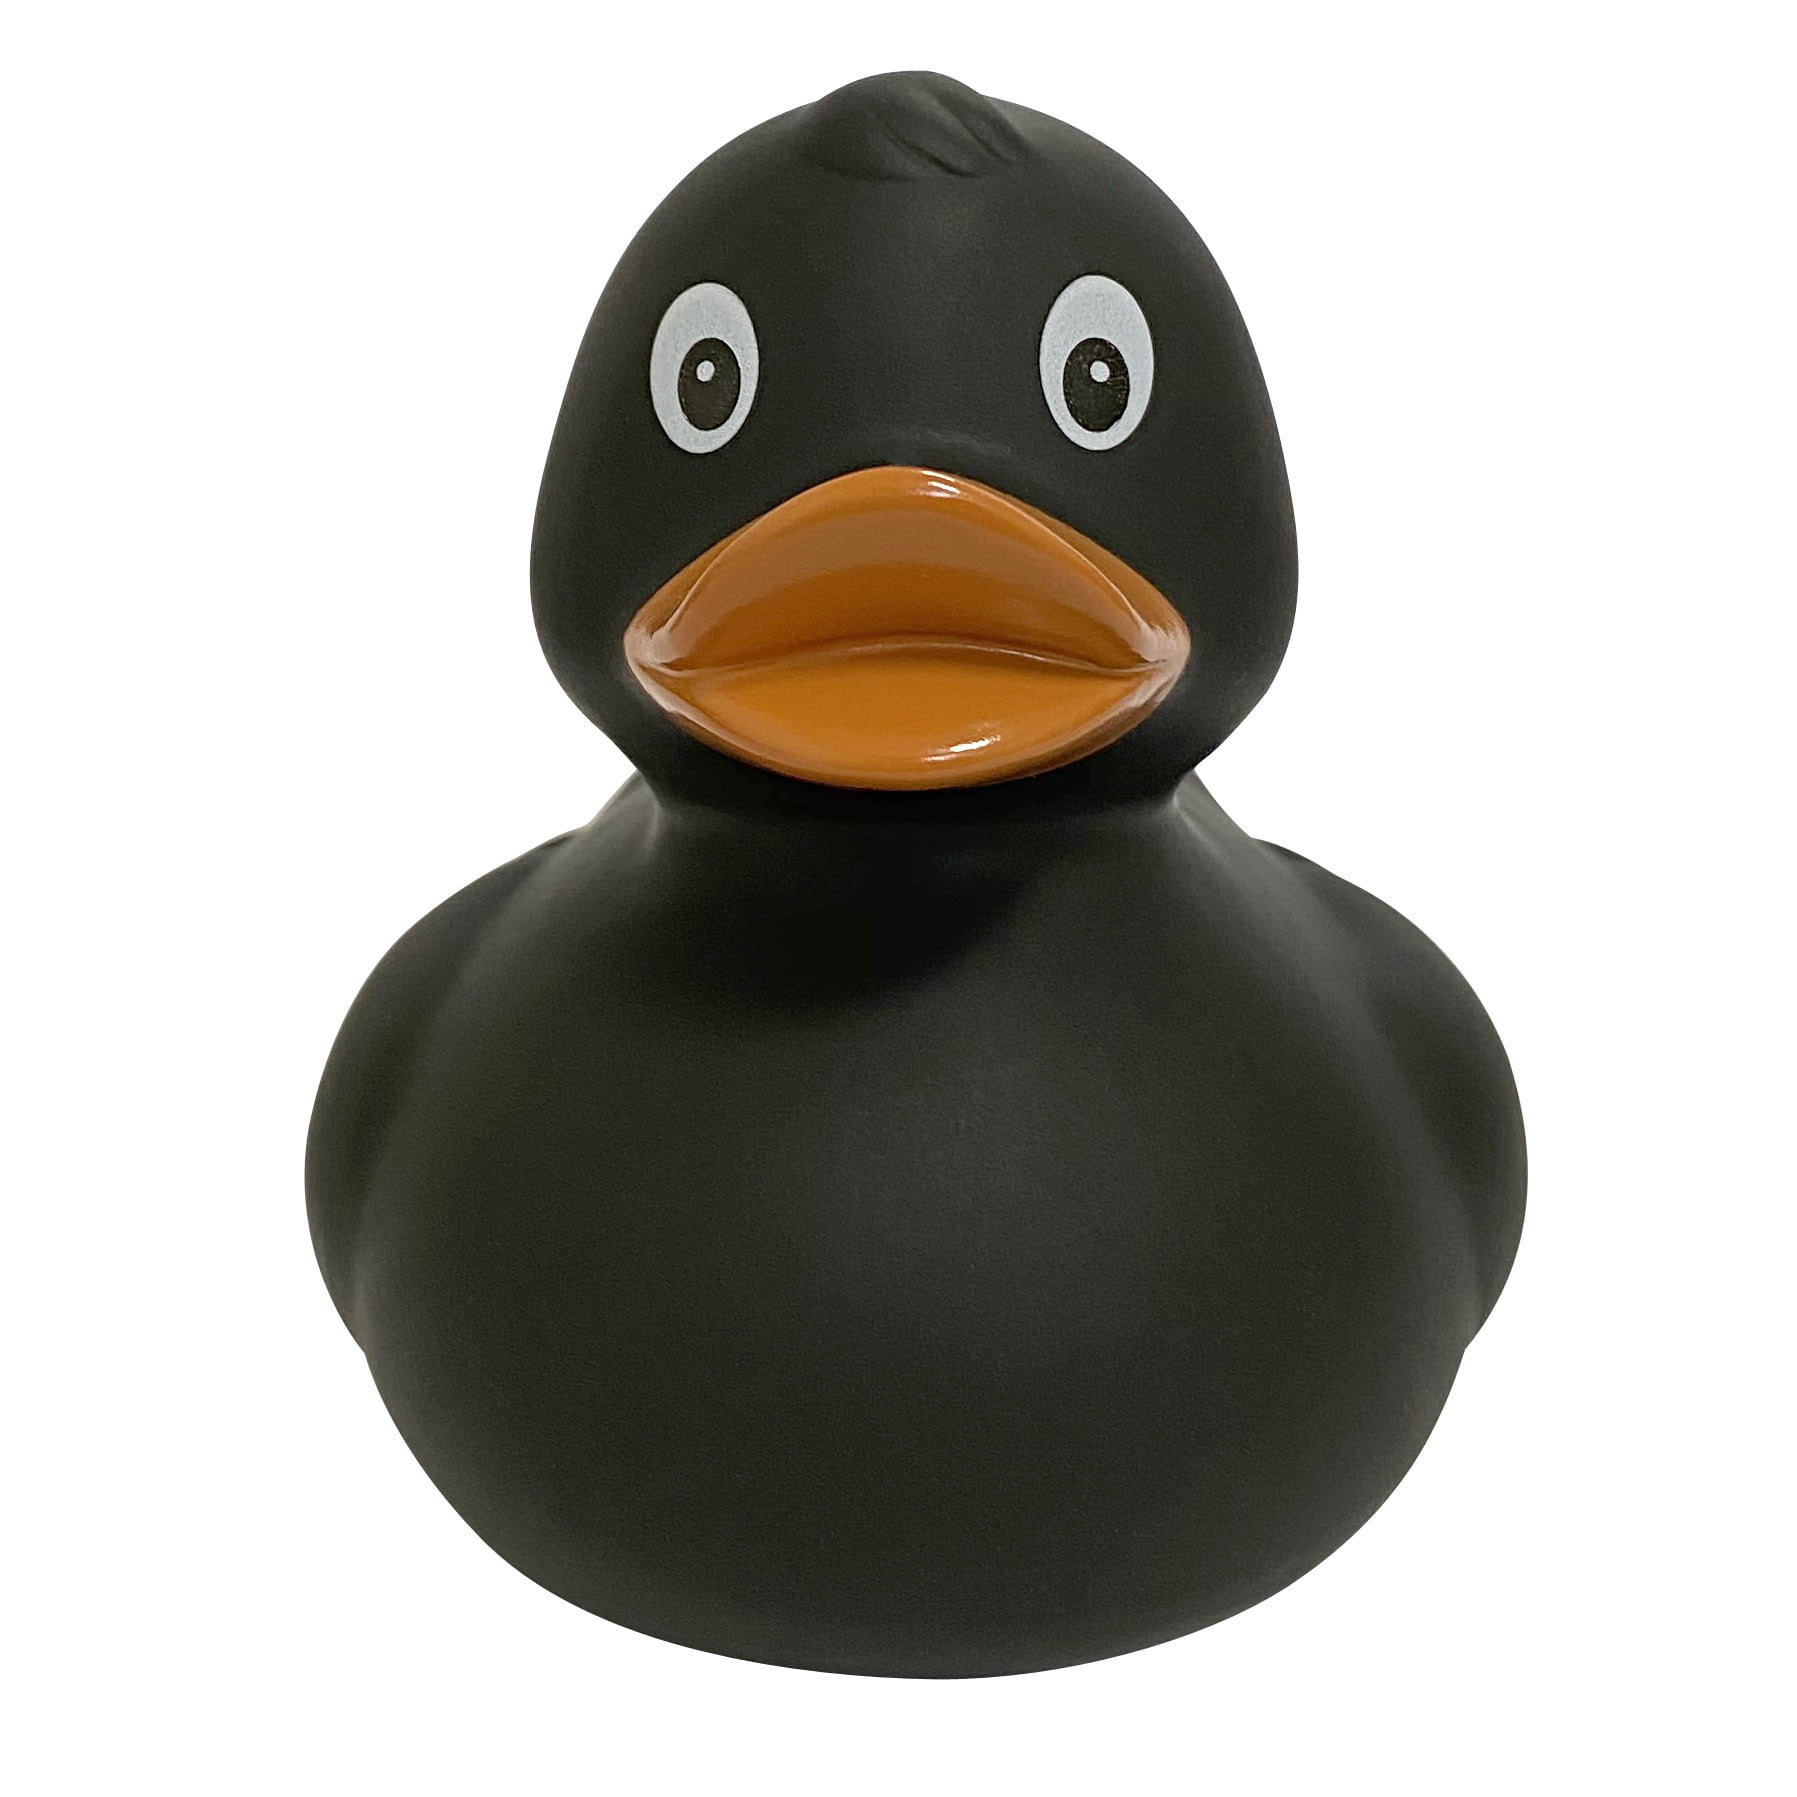 Игрушка для ванной FUNNY DUCKS Черная уточка игрушка для ванной funny ducks монстр ф уточка